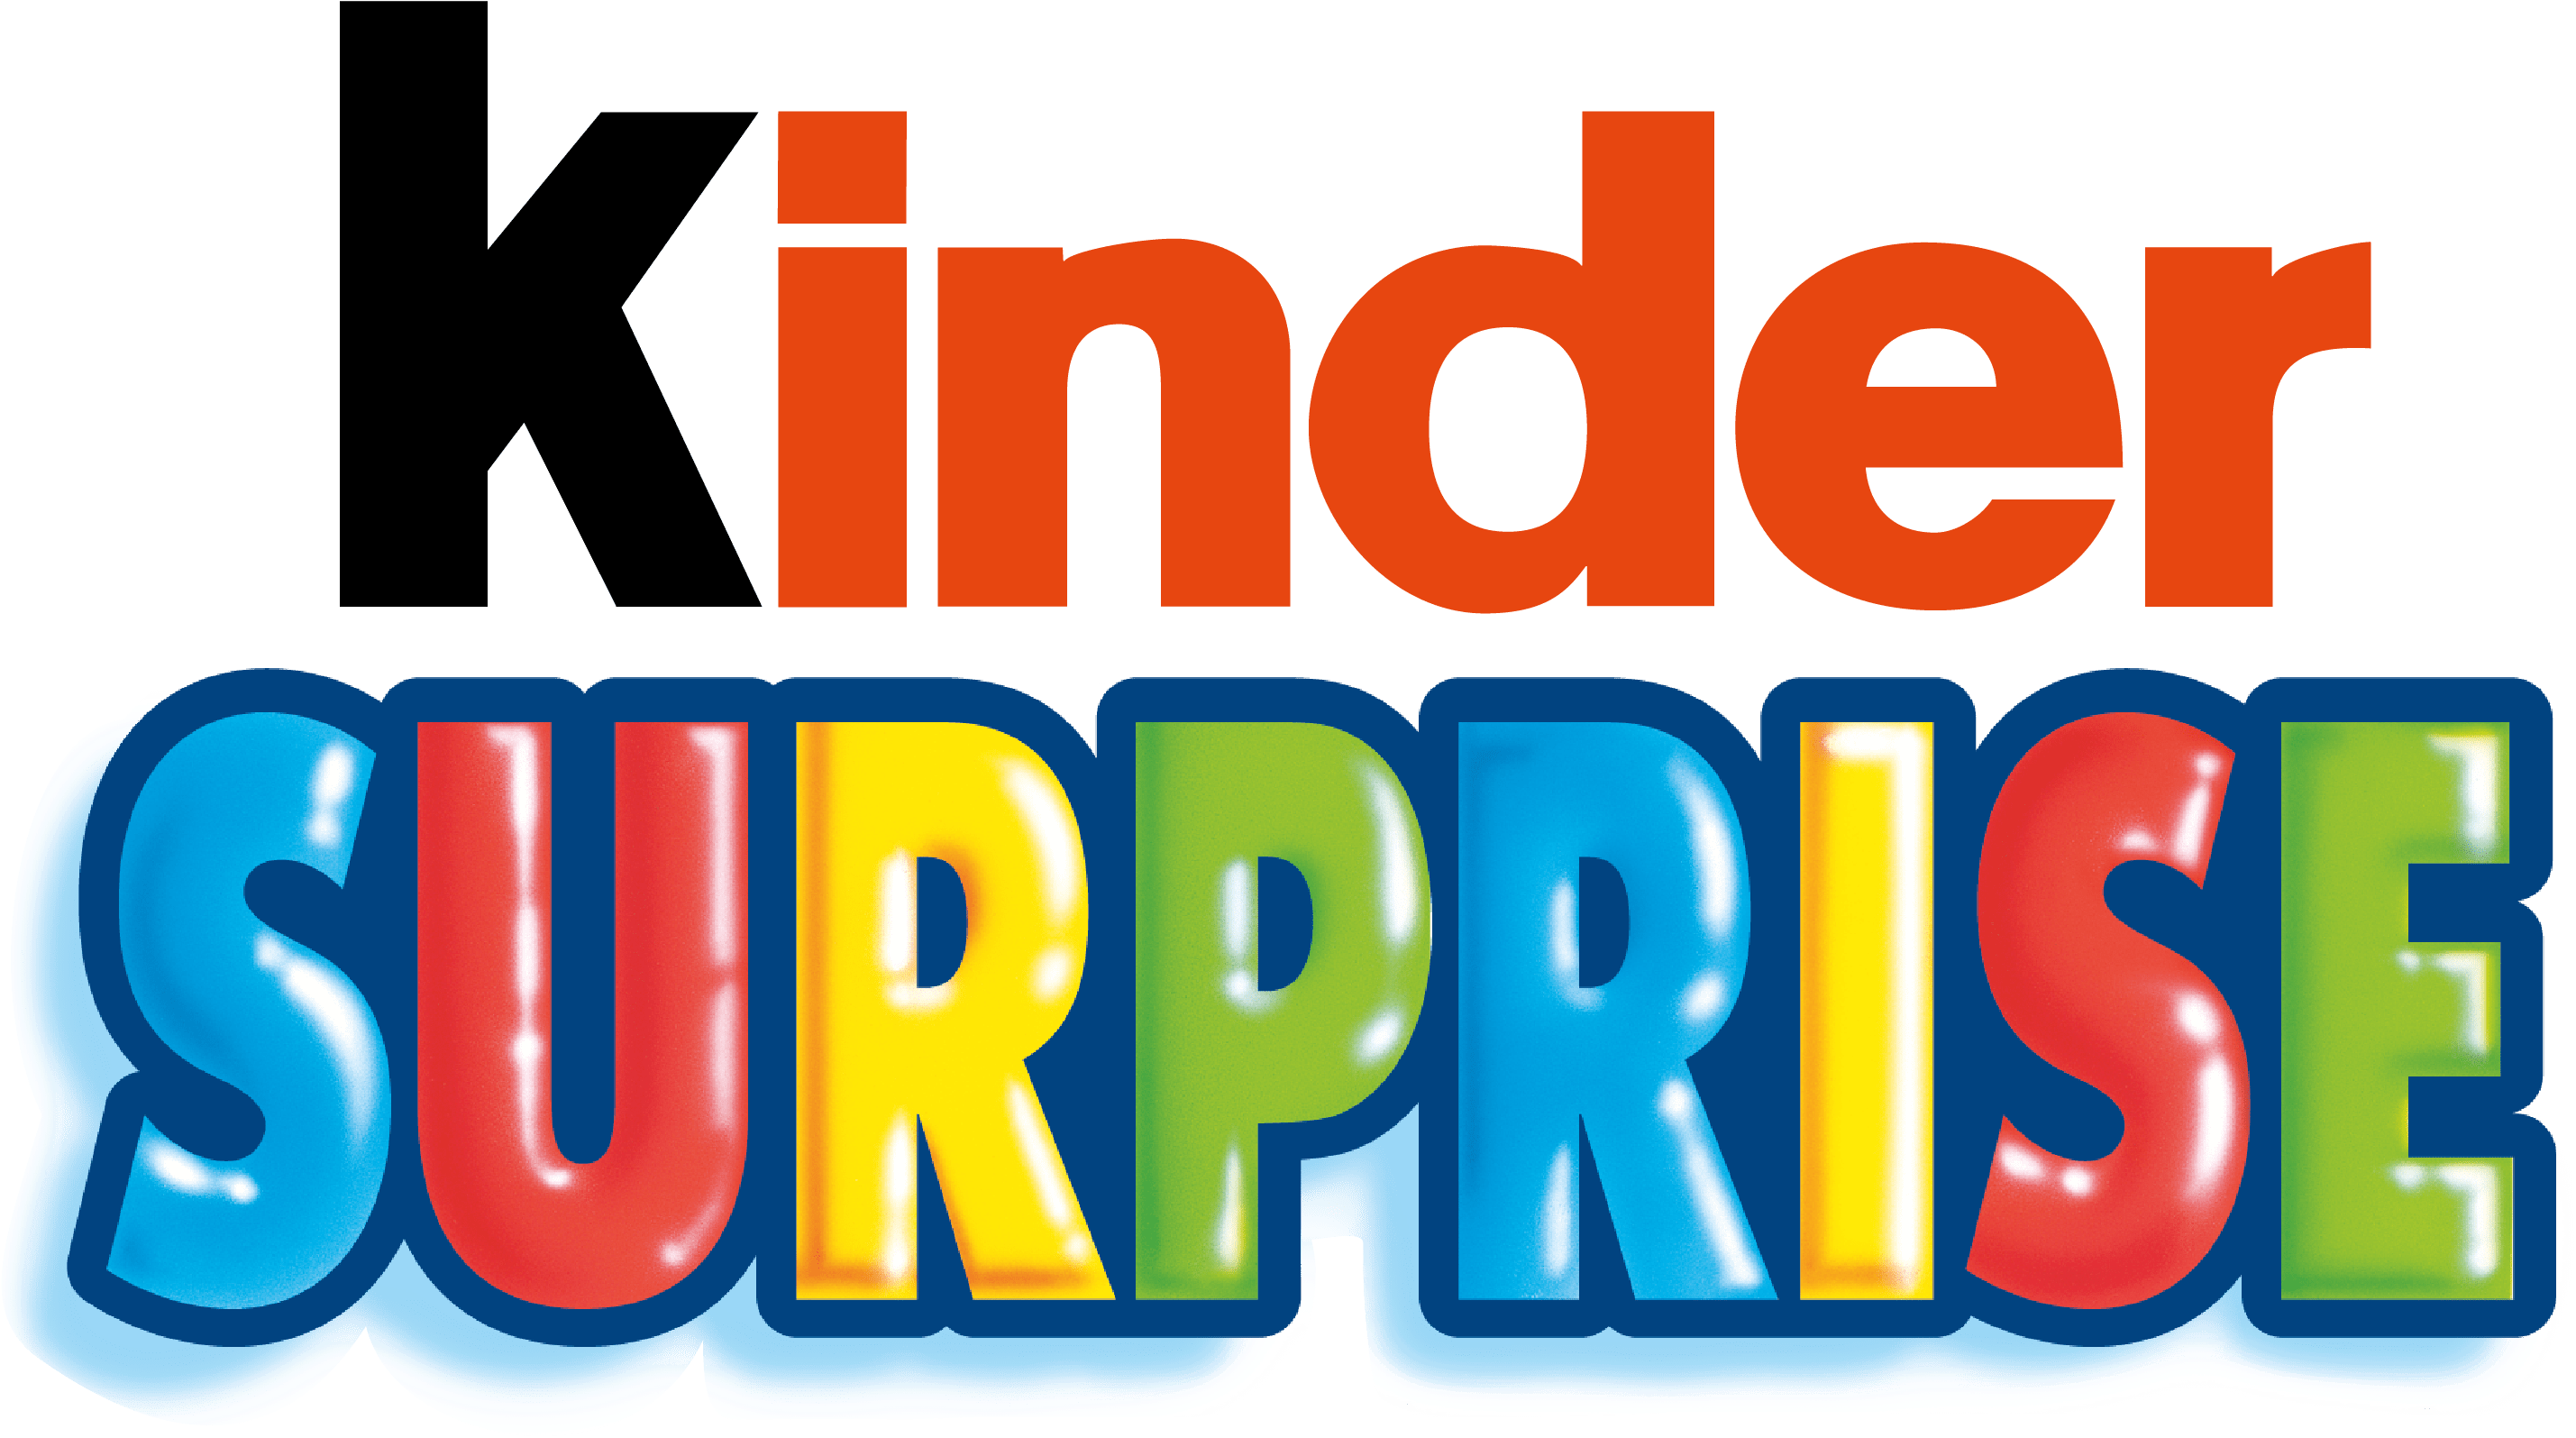 Kinder Surprise Logo - Kinder Surprise (3056x1977)